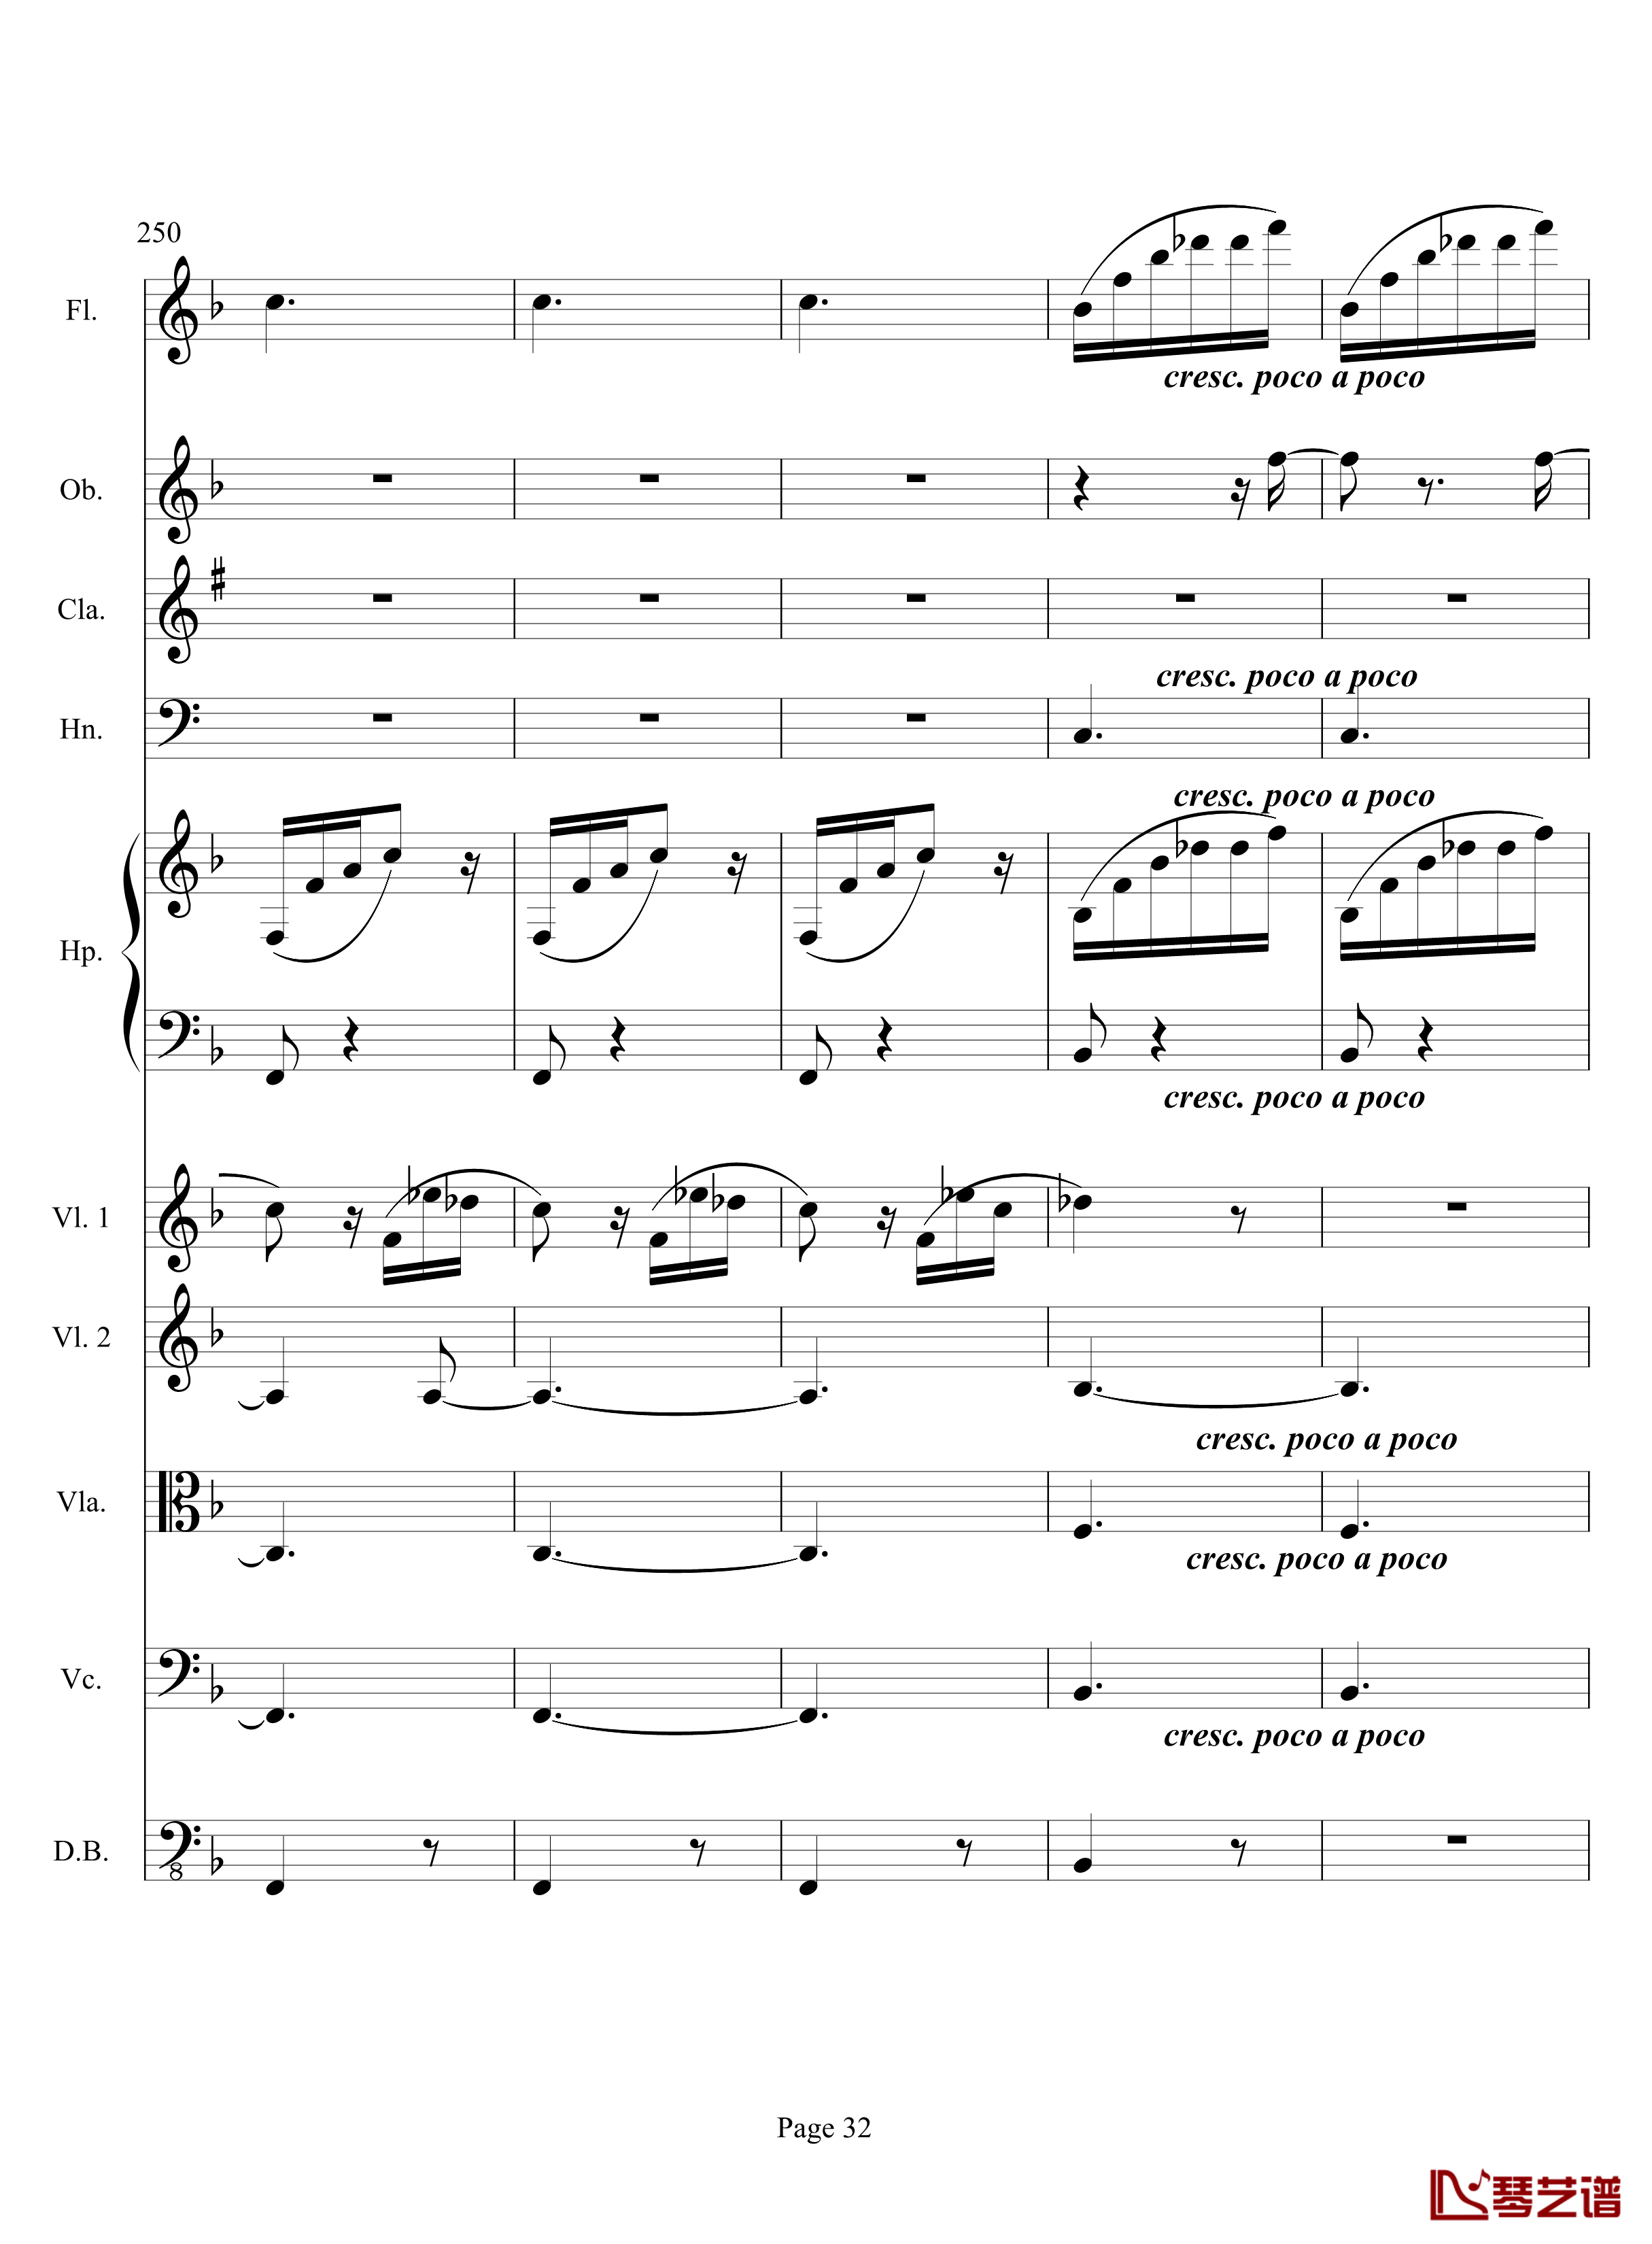 奏鸣曲之交响钢琴谱-第17首-Ⅲ-贝多芬-beethoven32